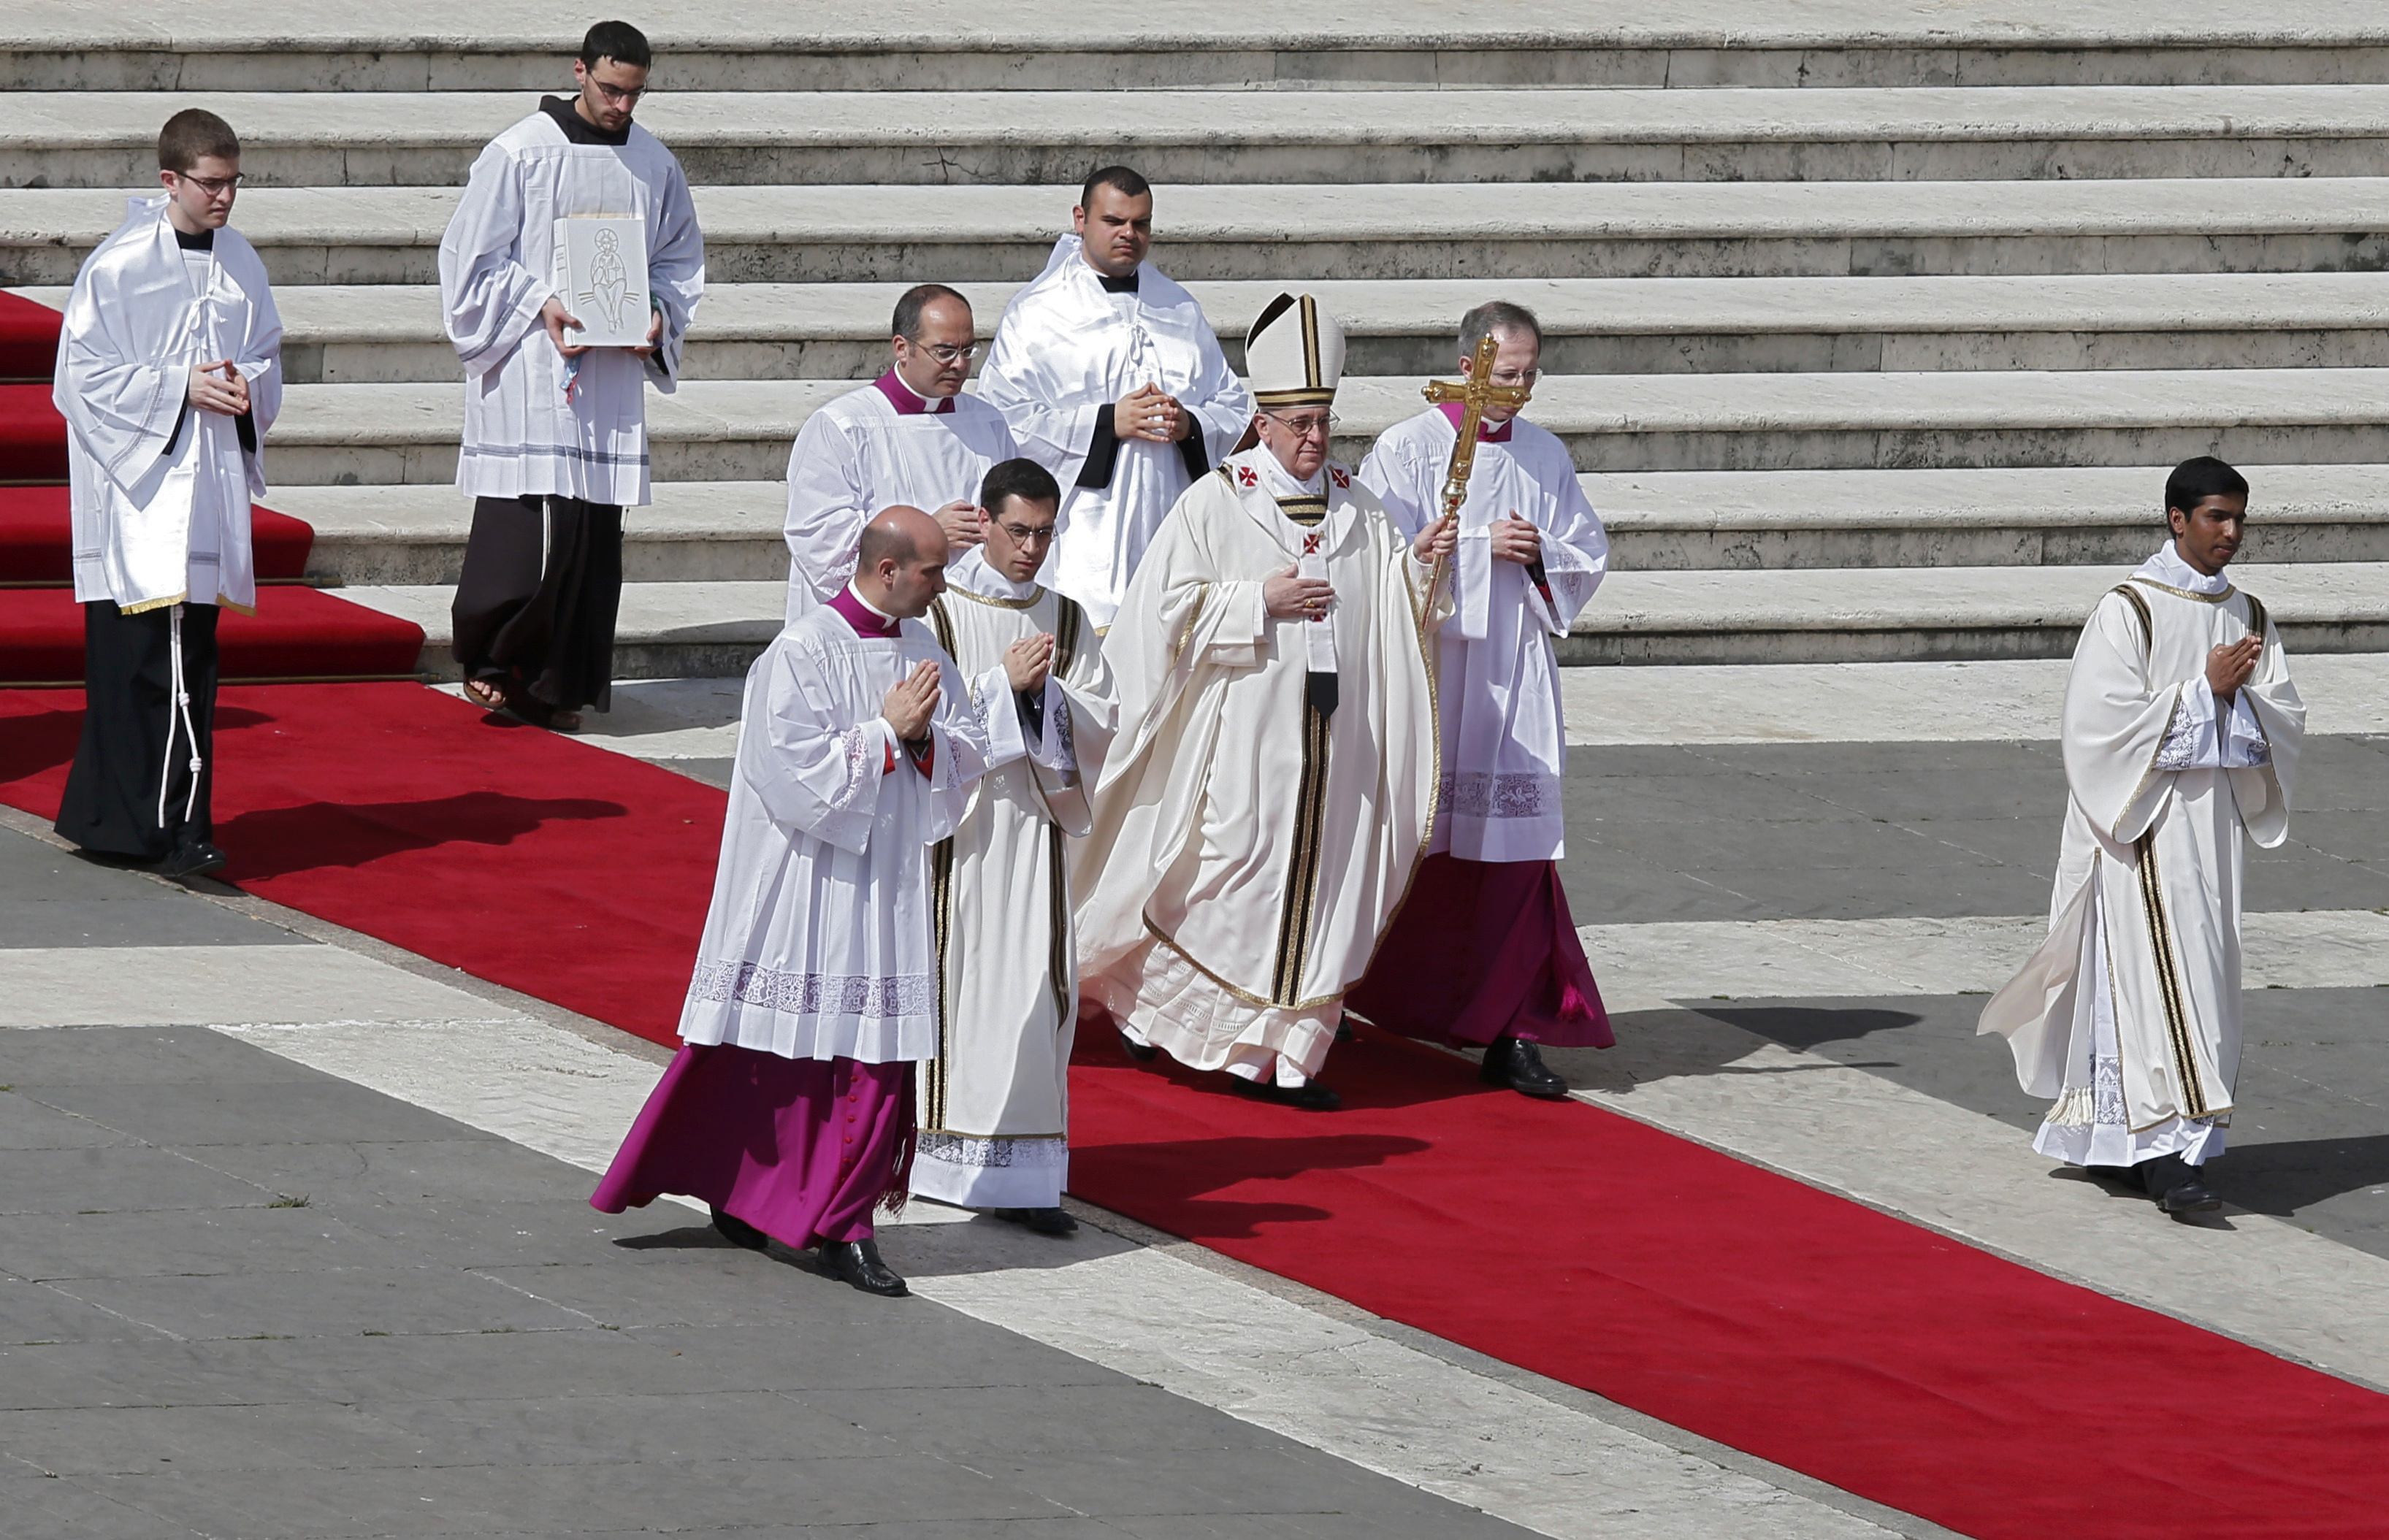 Αυτή την ώρα η συνάντηση Πάπα – Οικουμενικού Πατριάρχη